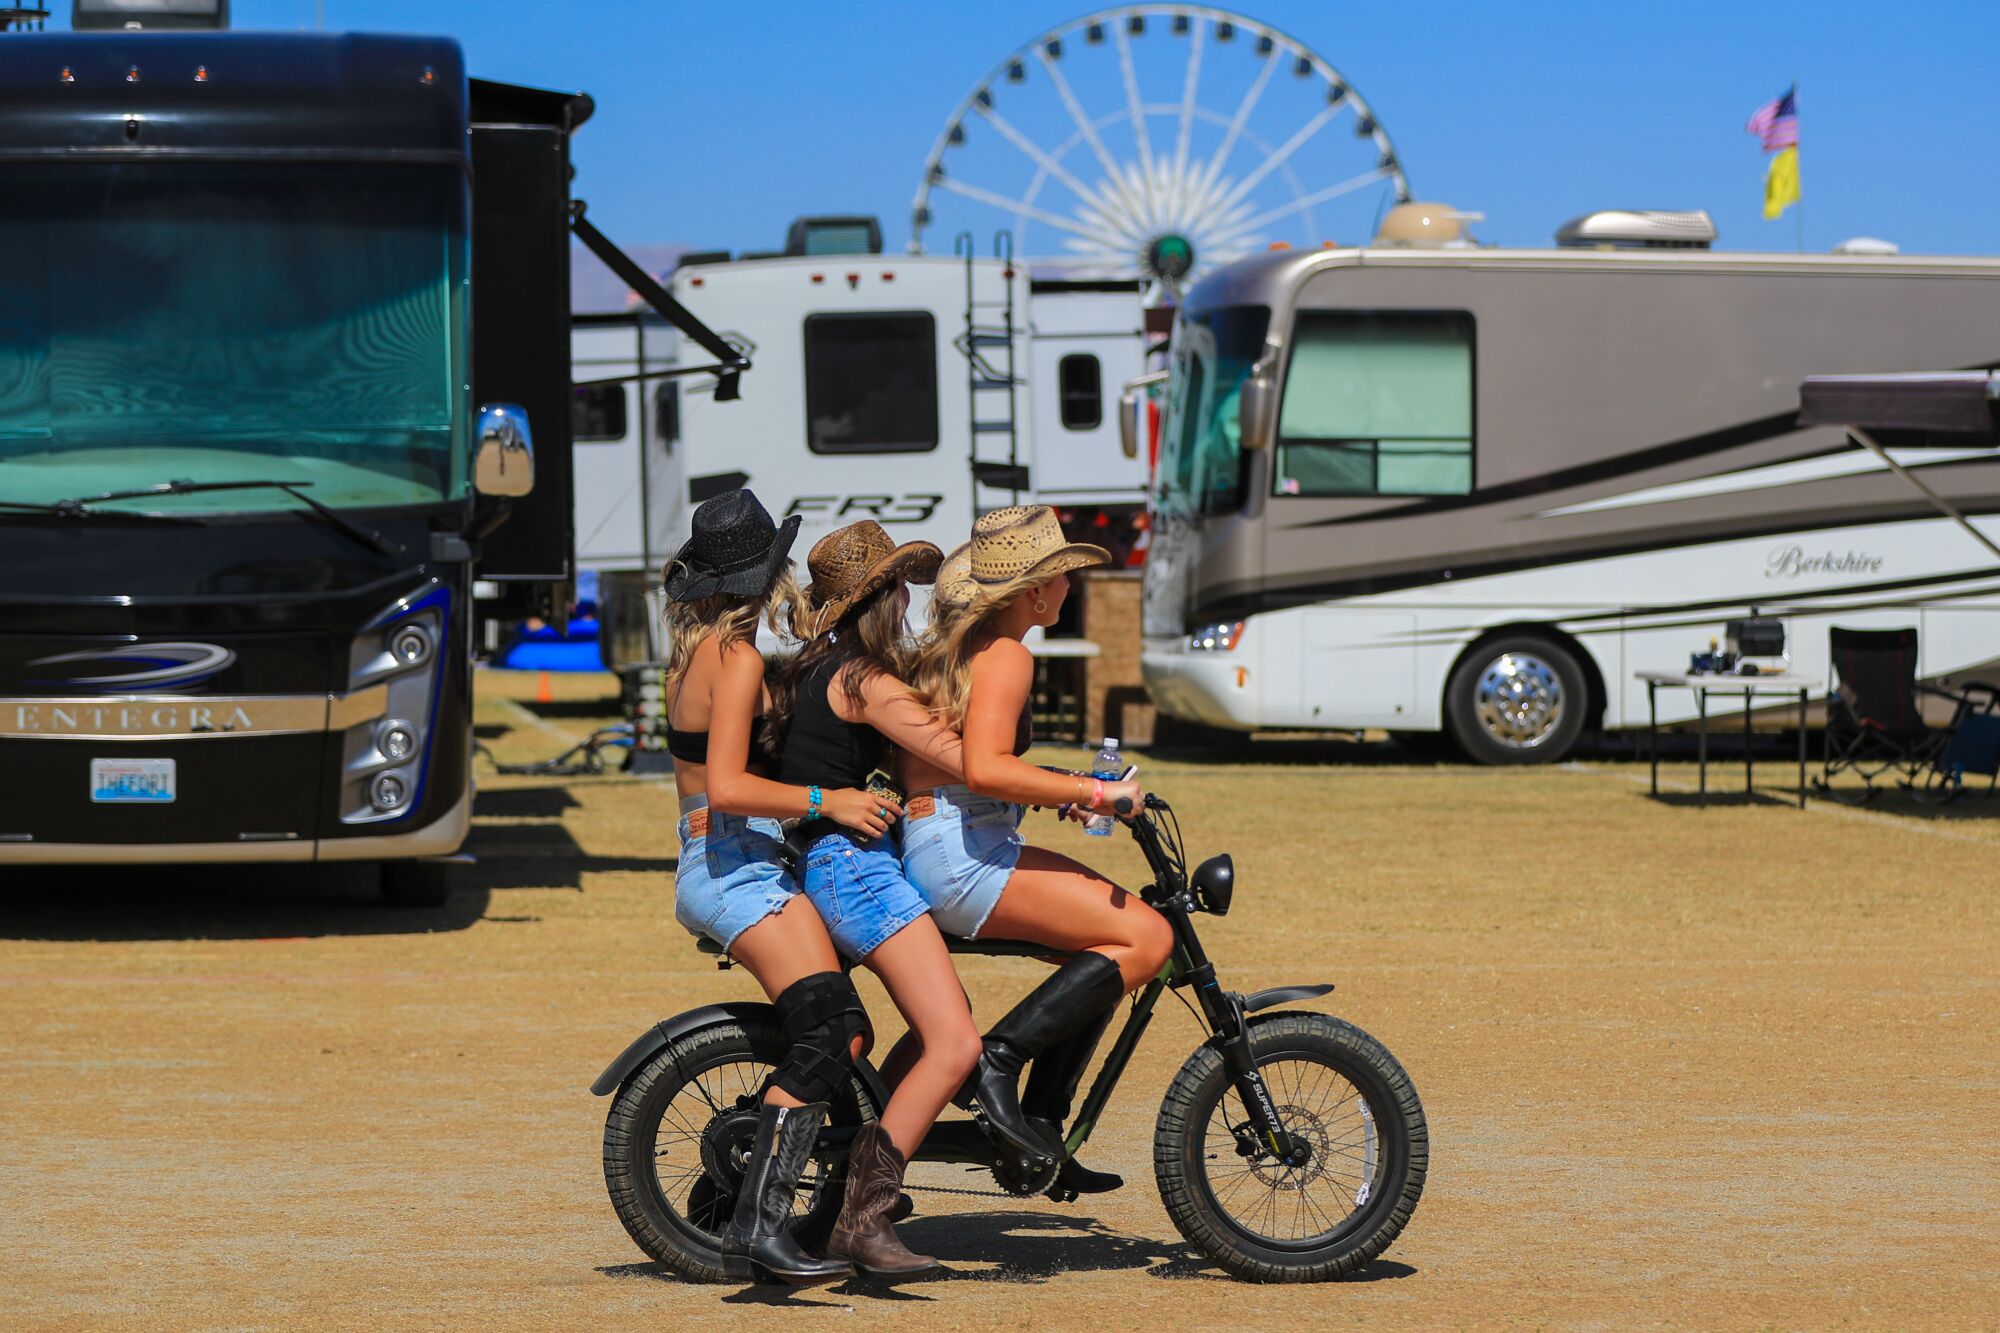 Kovboy çizmeli, şapkalı ve şortlu üç kadın Stagecoach kamp alanında elektrikli bisiklete biniyor.